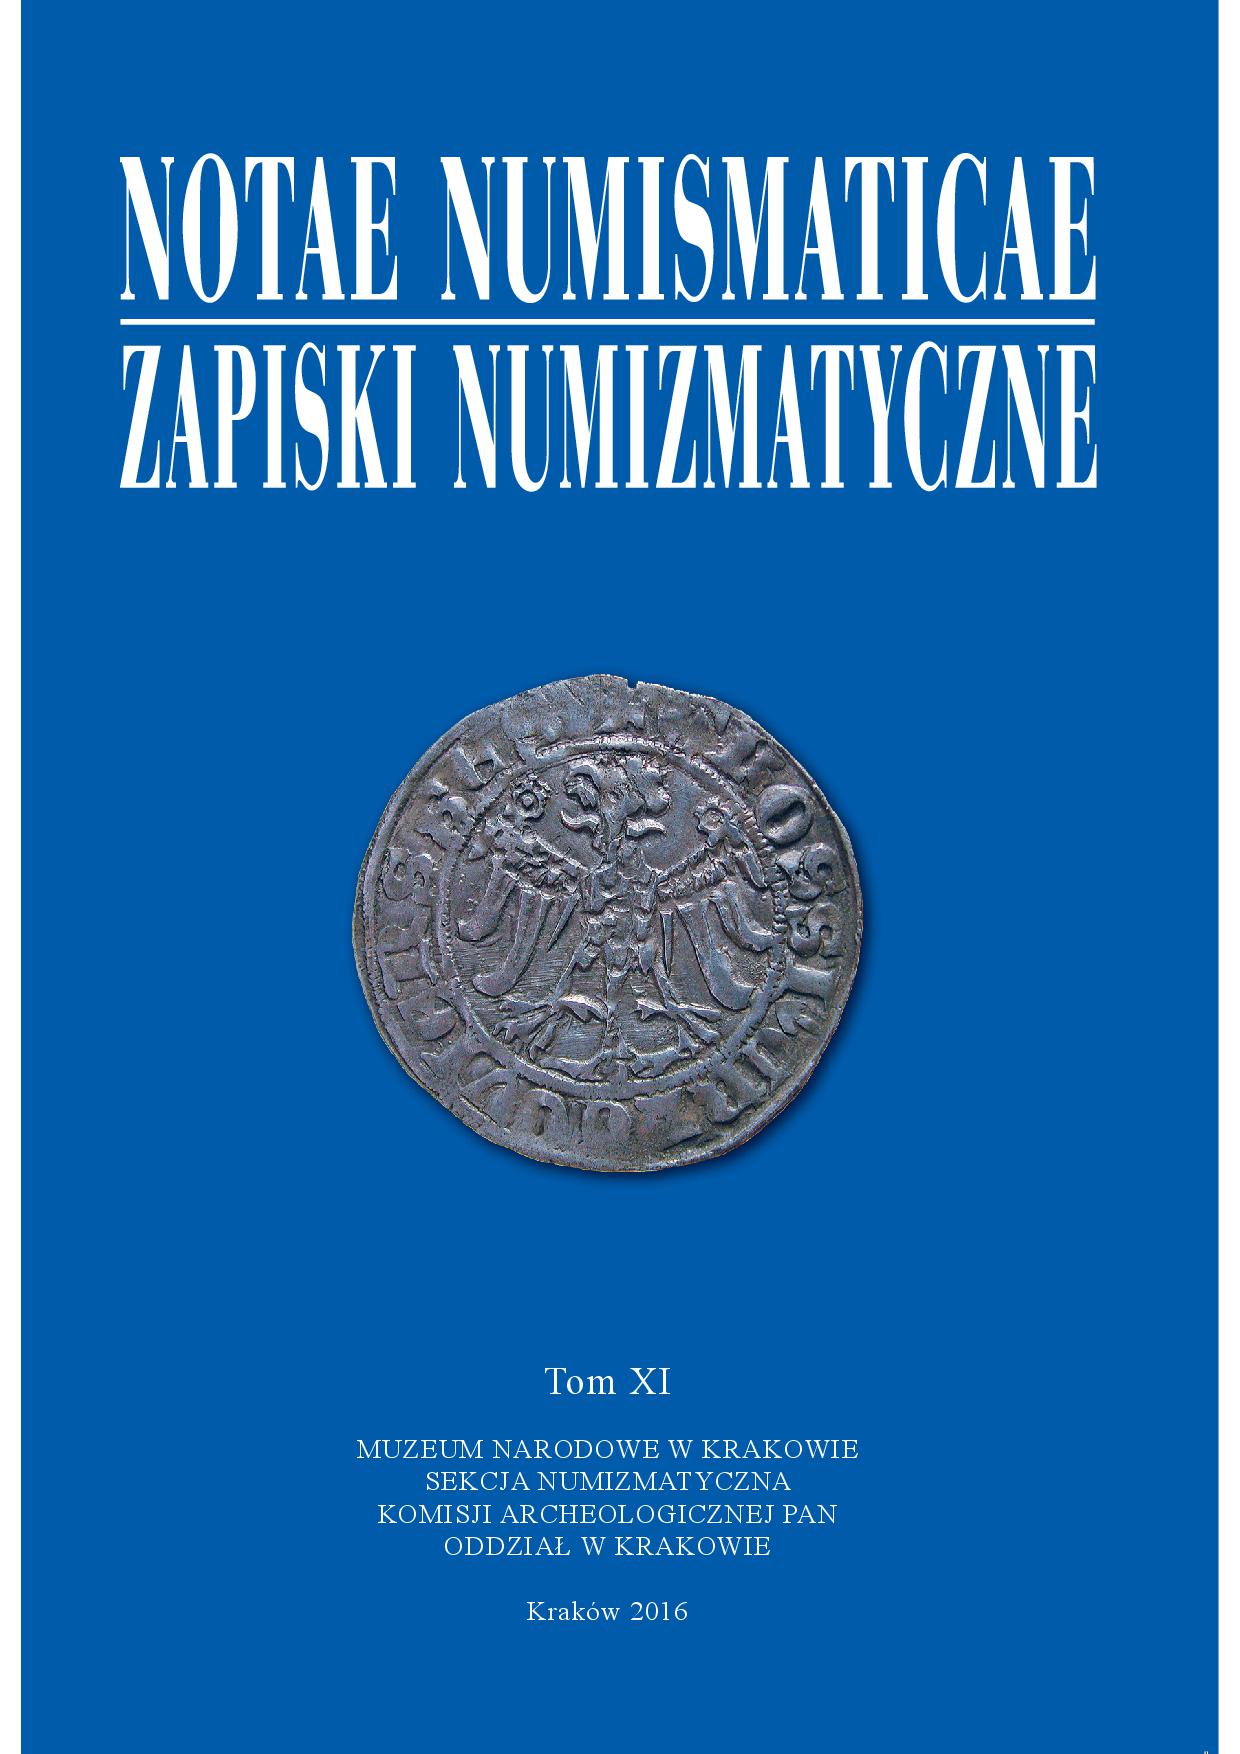 Kronika Gabinetu Numizmatycznego Muzeum Narodowego w Krakowie (2015) Cover Image